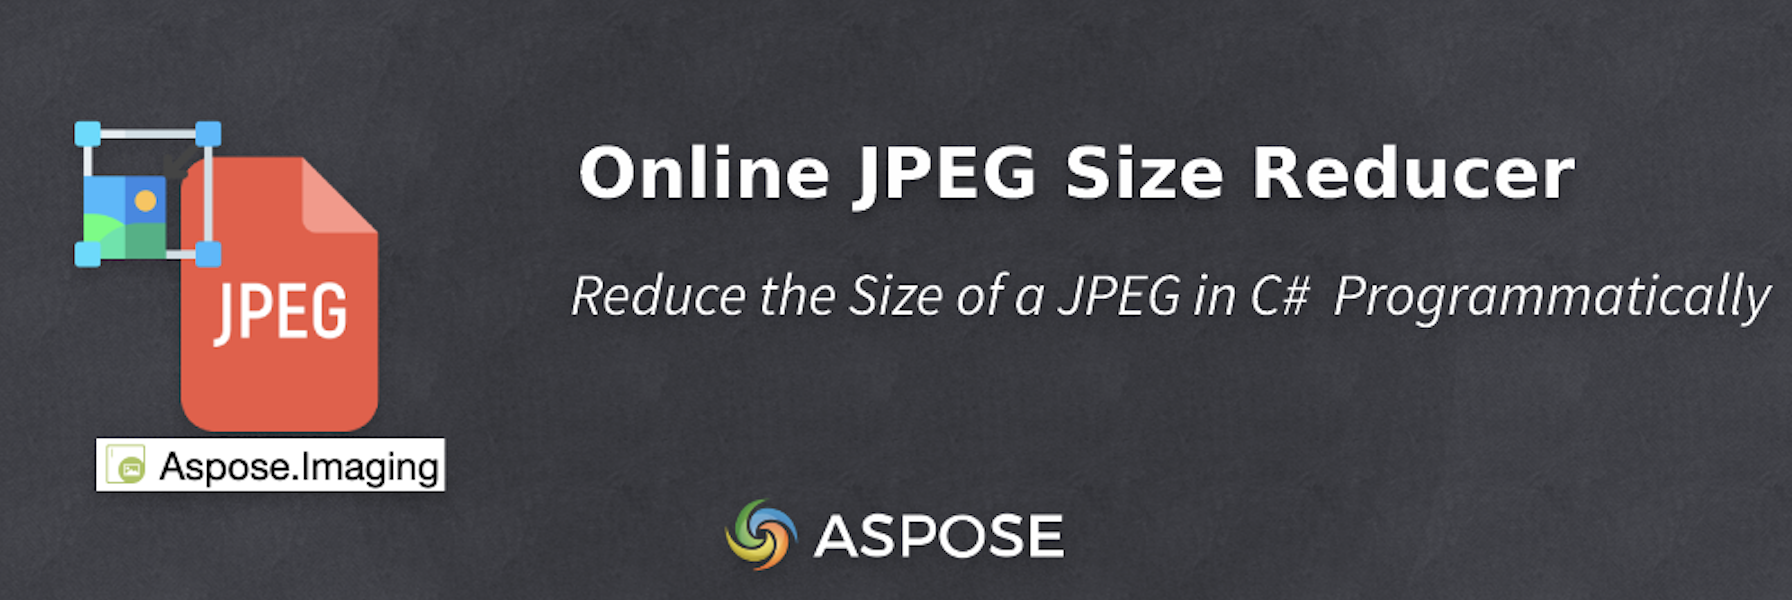 C#에서 JPEG 크기 줄이기 - 온라인 JPEG 크기 감소기